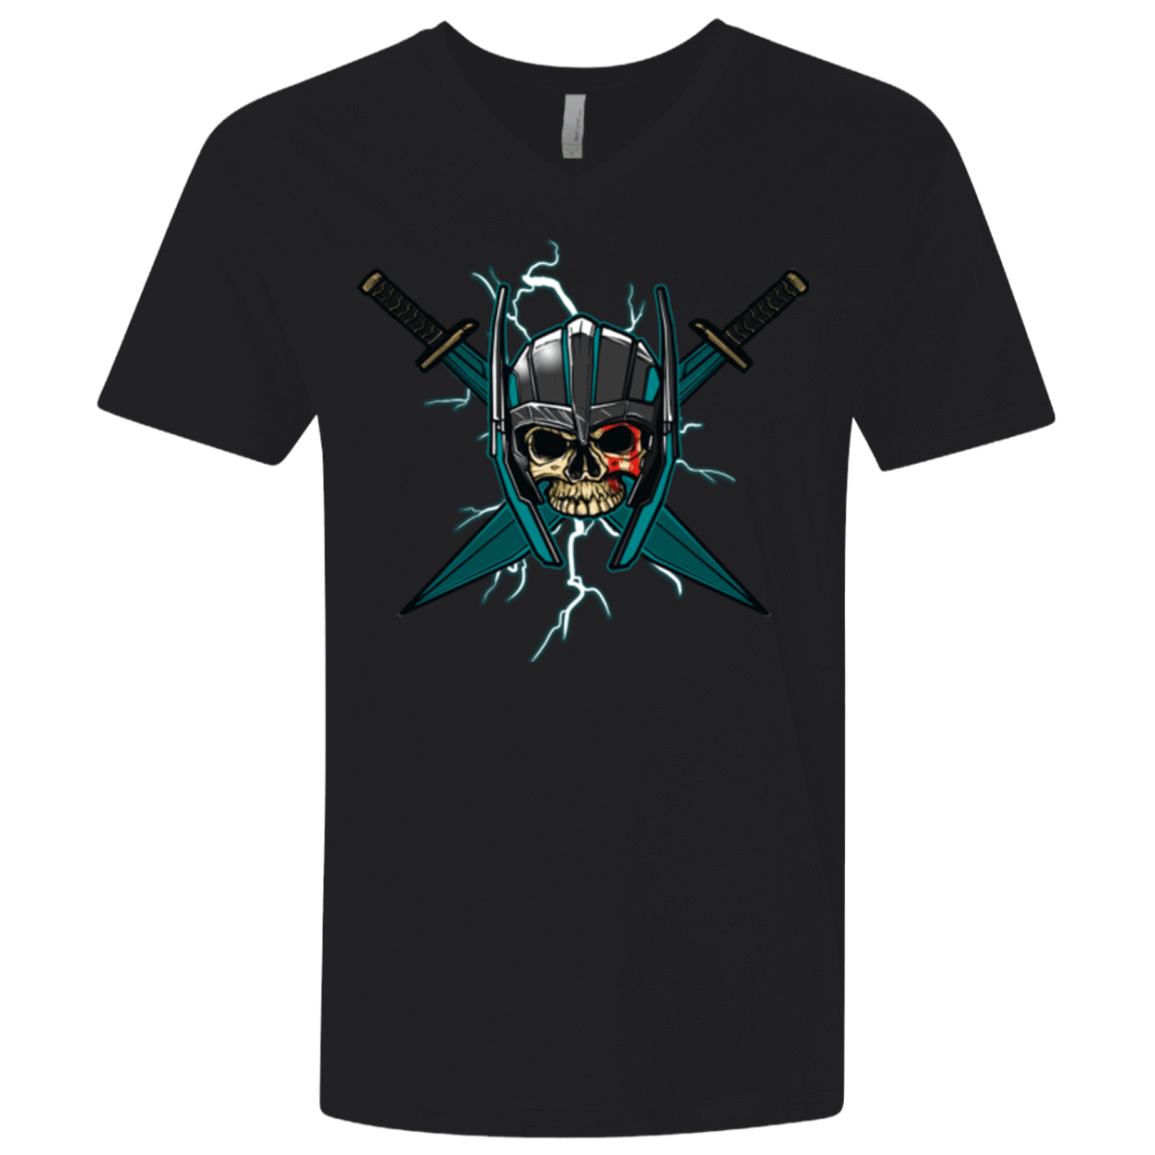 T-Shirts Black / X-Small Ragnarok Men's Premium V-Neck